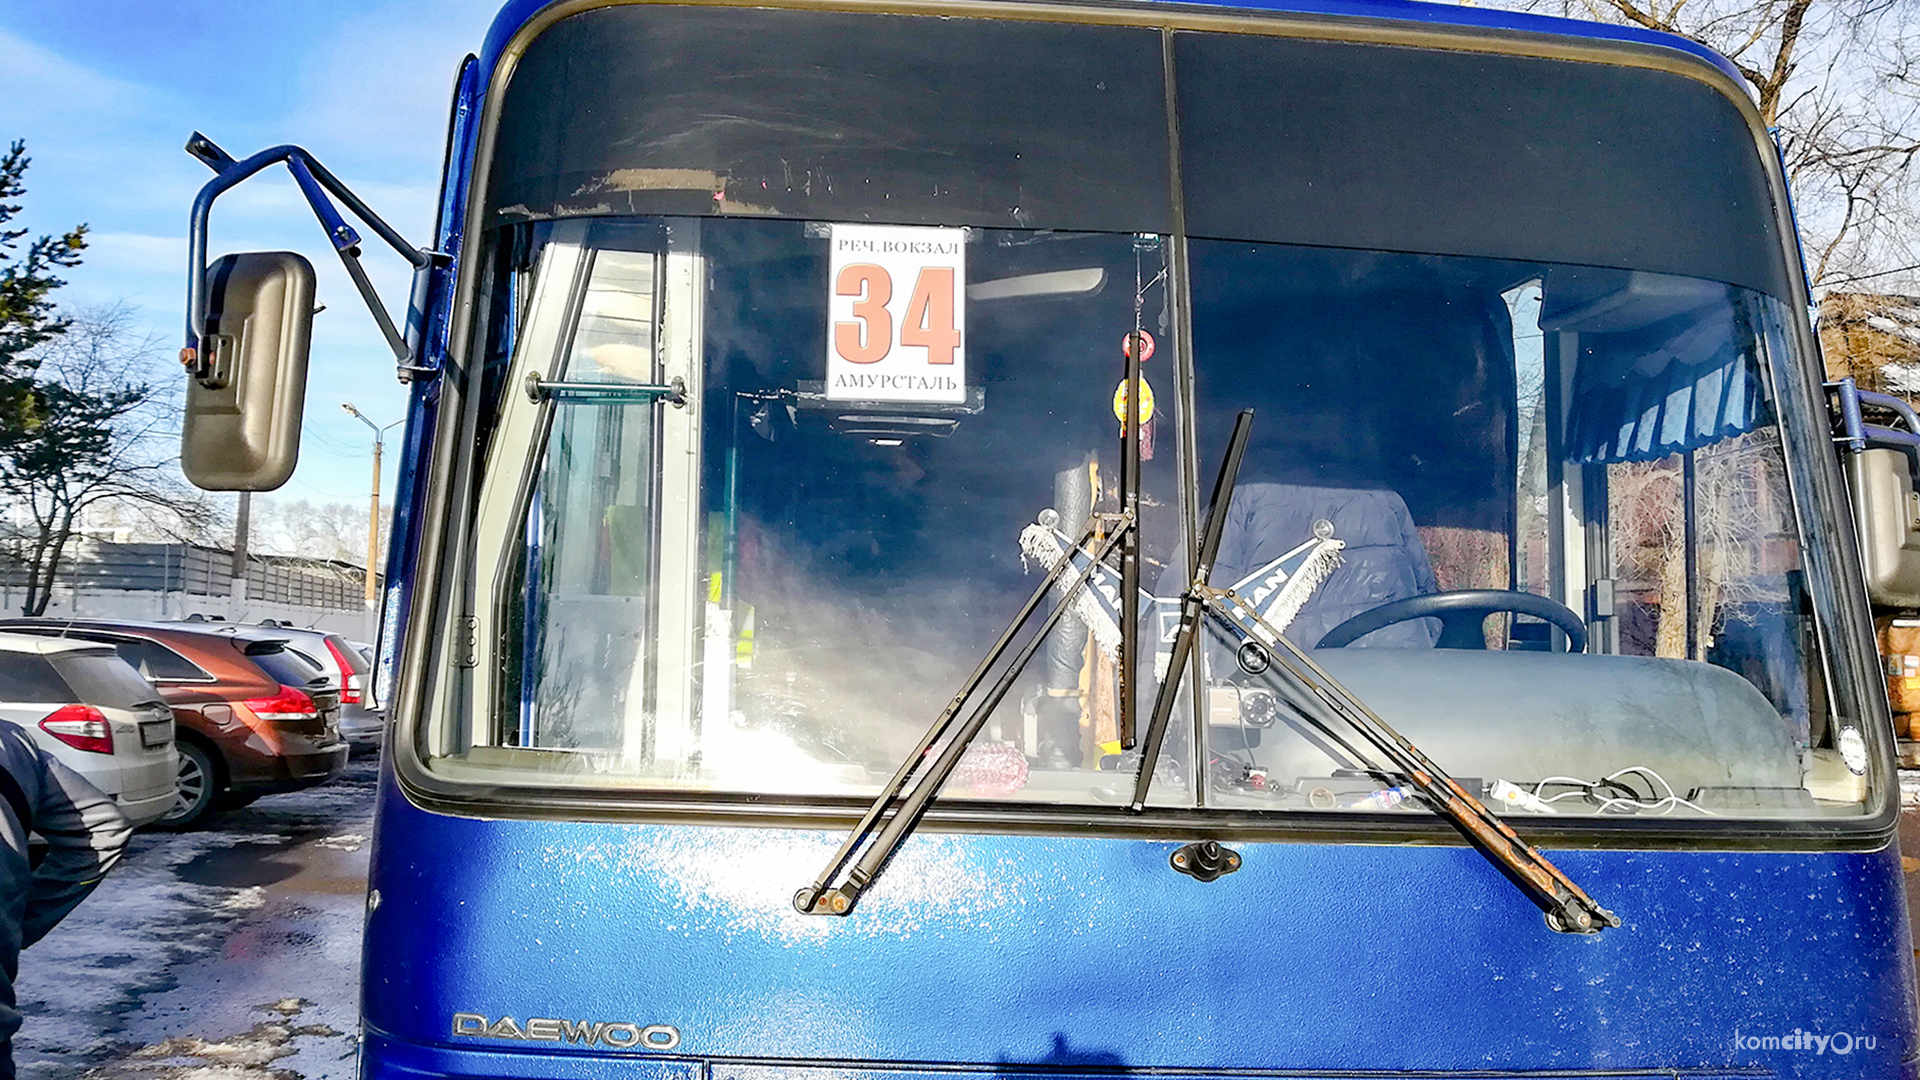 В микрорайон Амурсталь Комсомольска-на-Амуре снова запустят автобусный маршрут, дублирующий трамвай-«тройку»